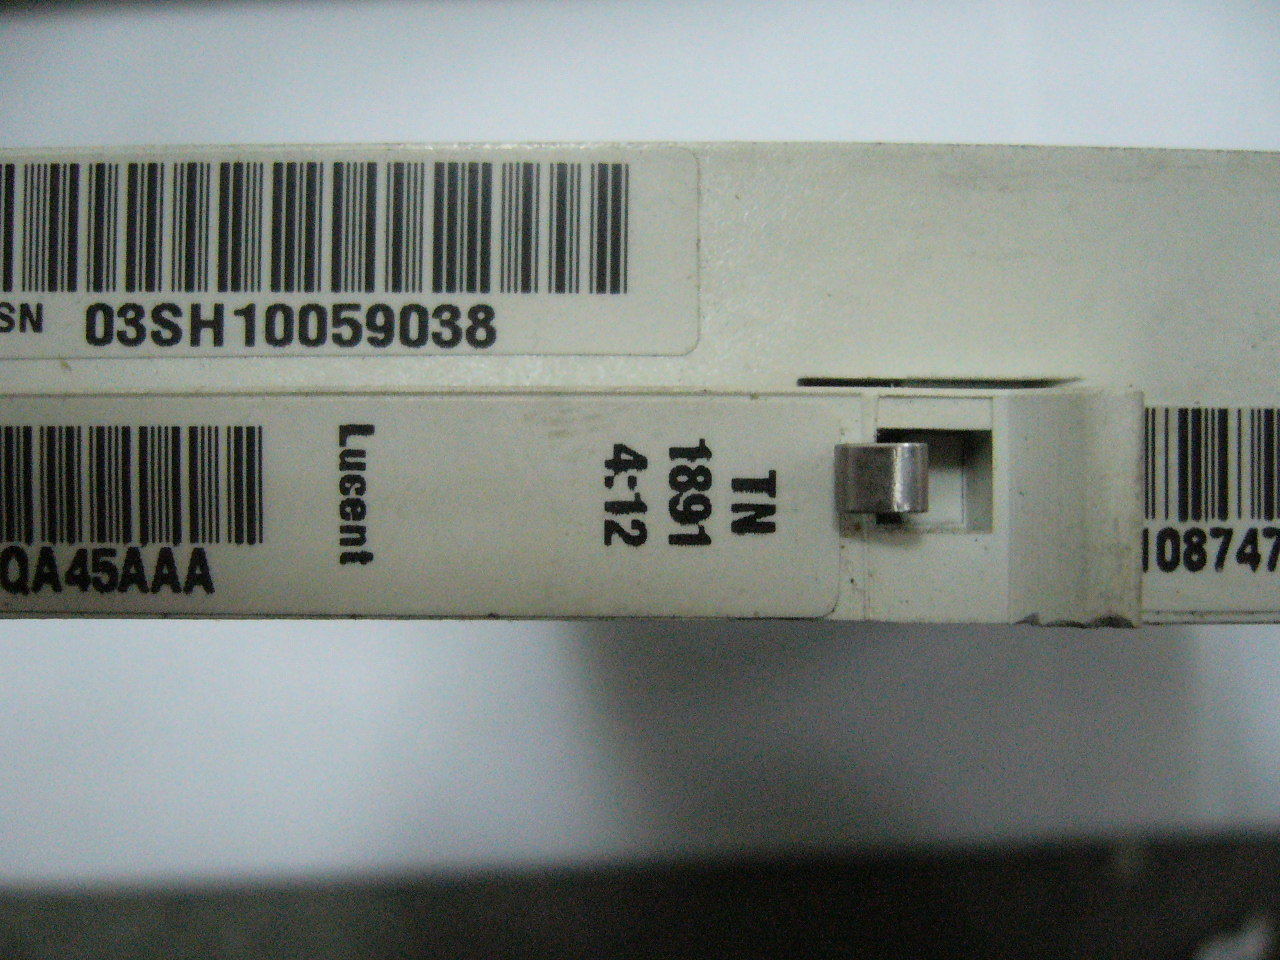 Lucent TN1891 4:12 Card HECI E5PQA45AAA 5ESS - Click Image to Close